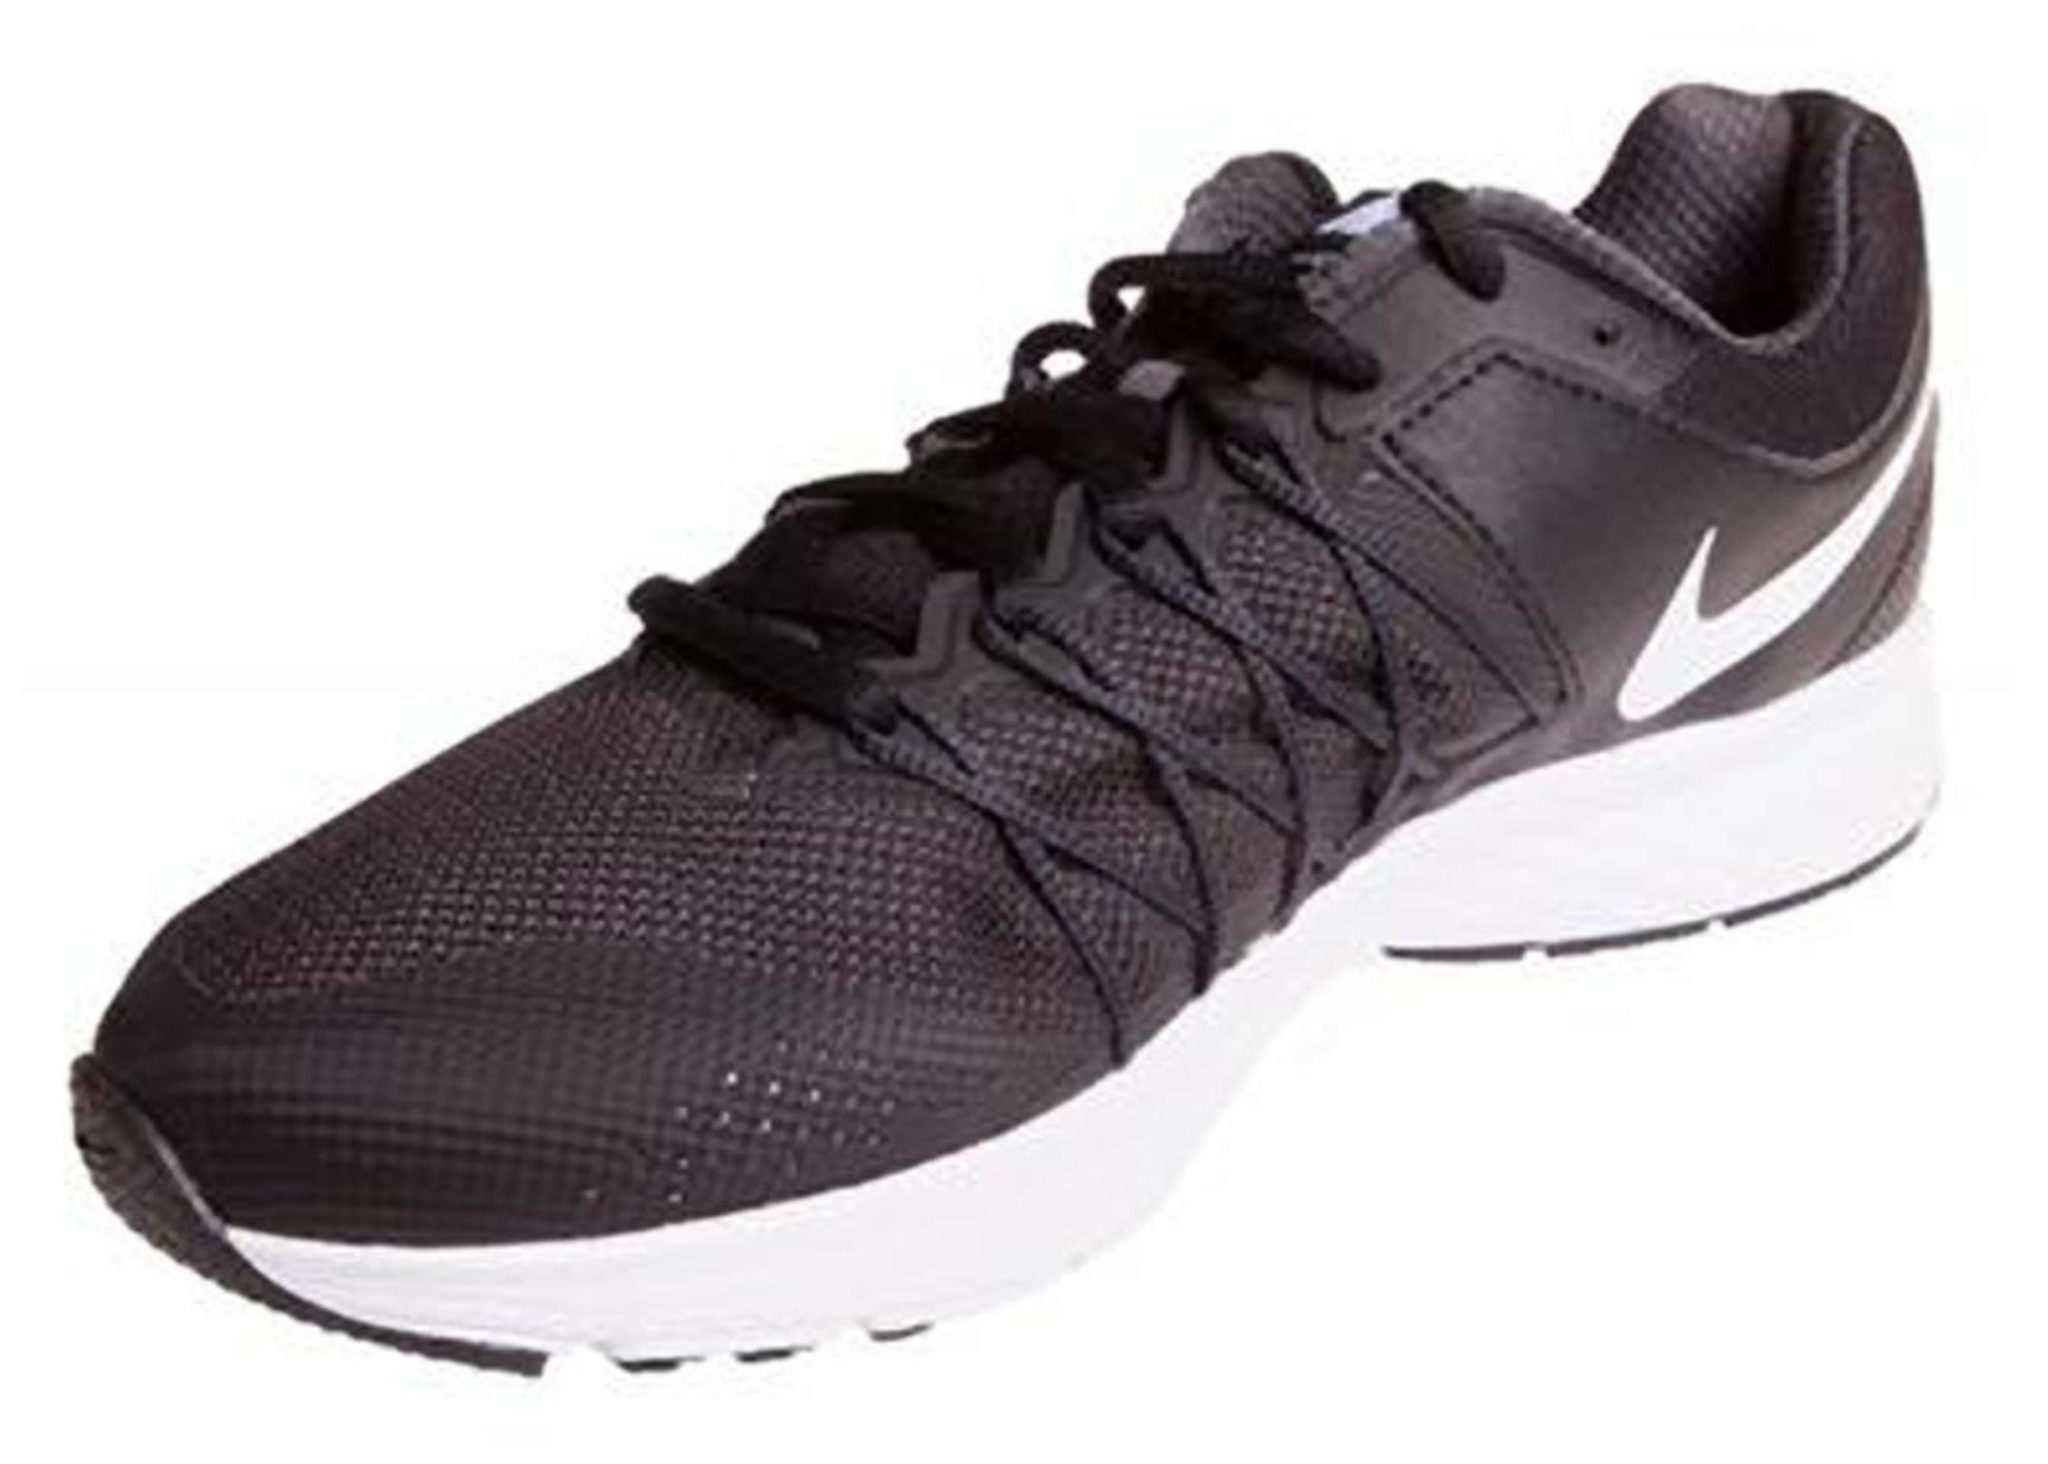 Buy Nike Mens Air Relentless 6 Msl Black Running Shoes Online - Get 47% Off